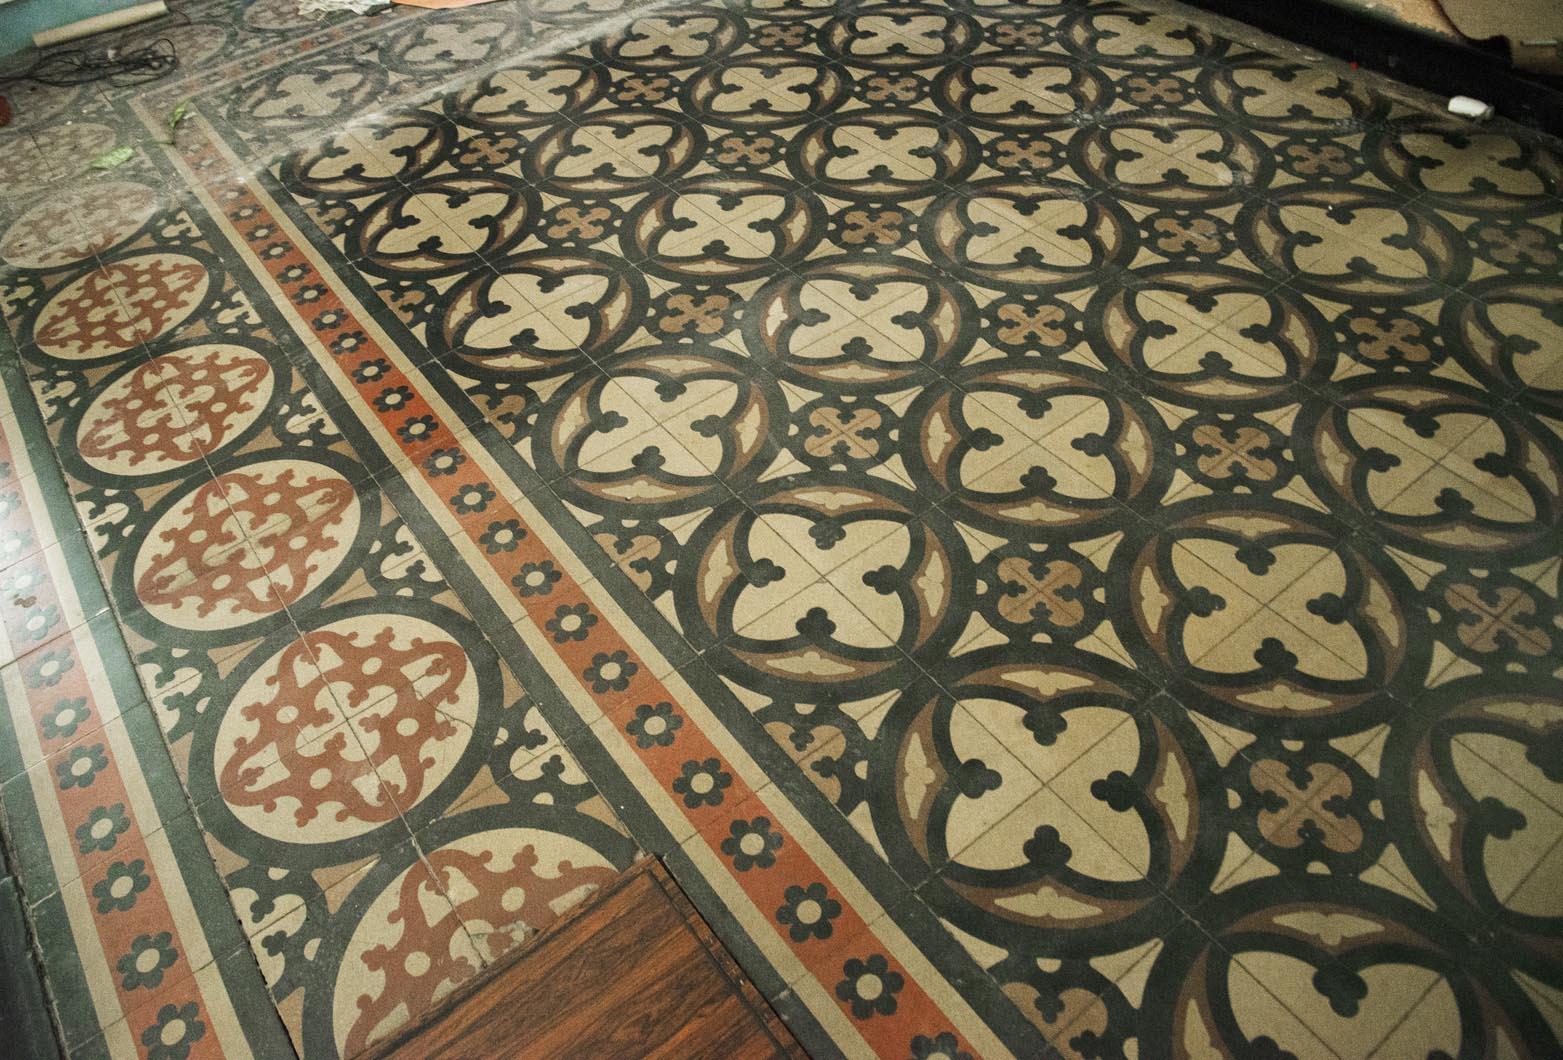 Dieser authentische Boden besteht aus reich verzierten Zementfliesen aus einer Kirche. Die dynamische Komposition aus dem 19. Jahrhundert zeichnet sich durch rote, schwarze und weiße Muster aus, die ein wichtiges Ensemble bilden, das sowohl